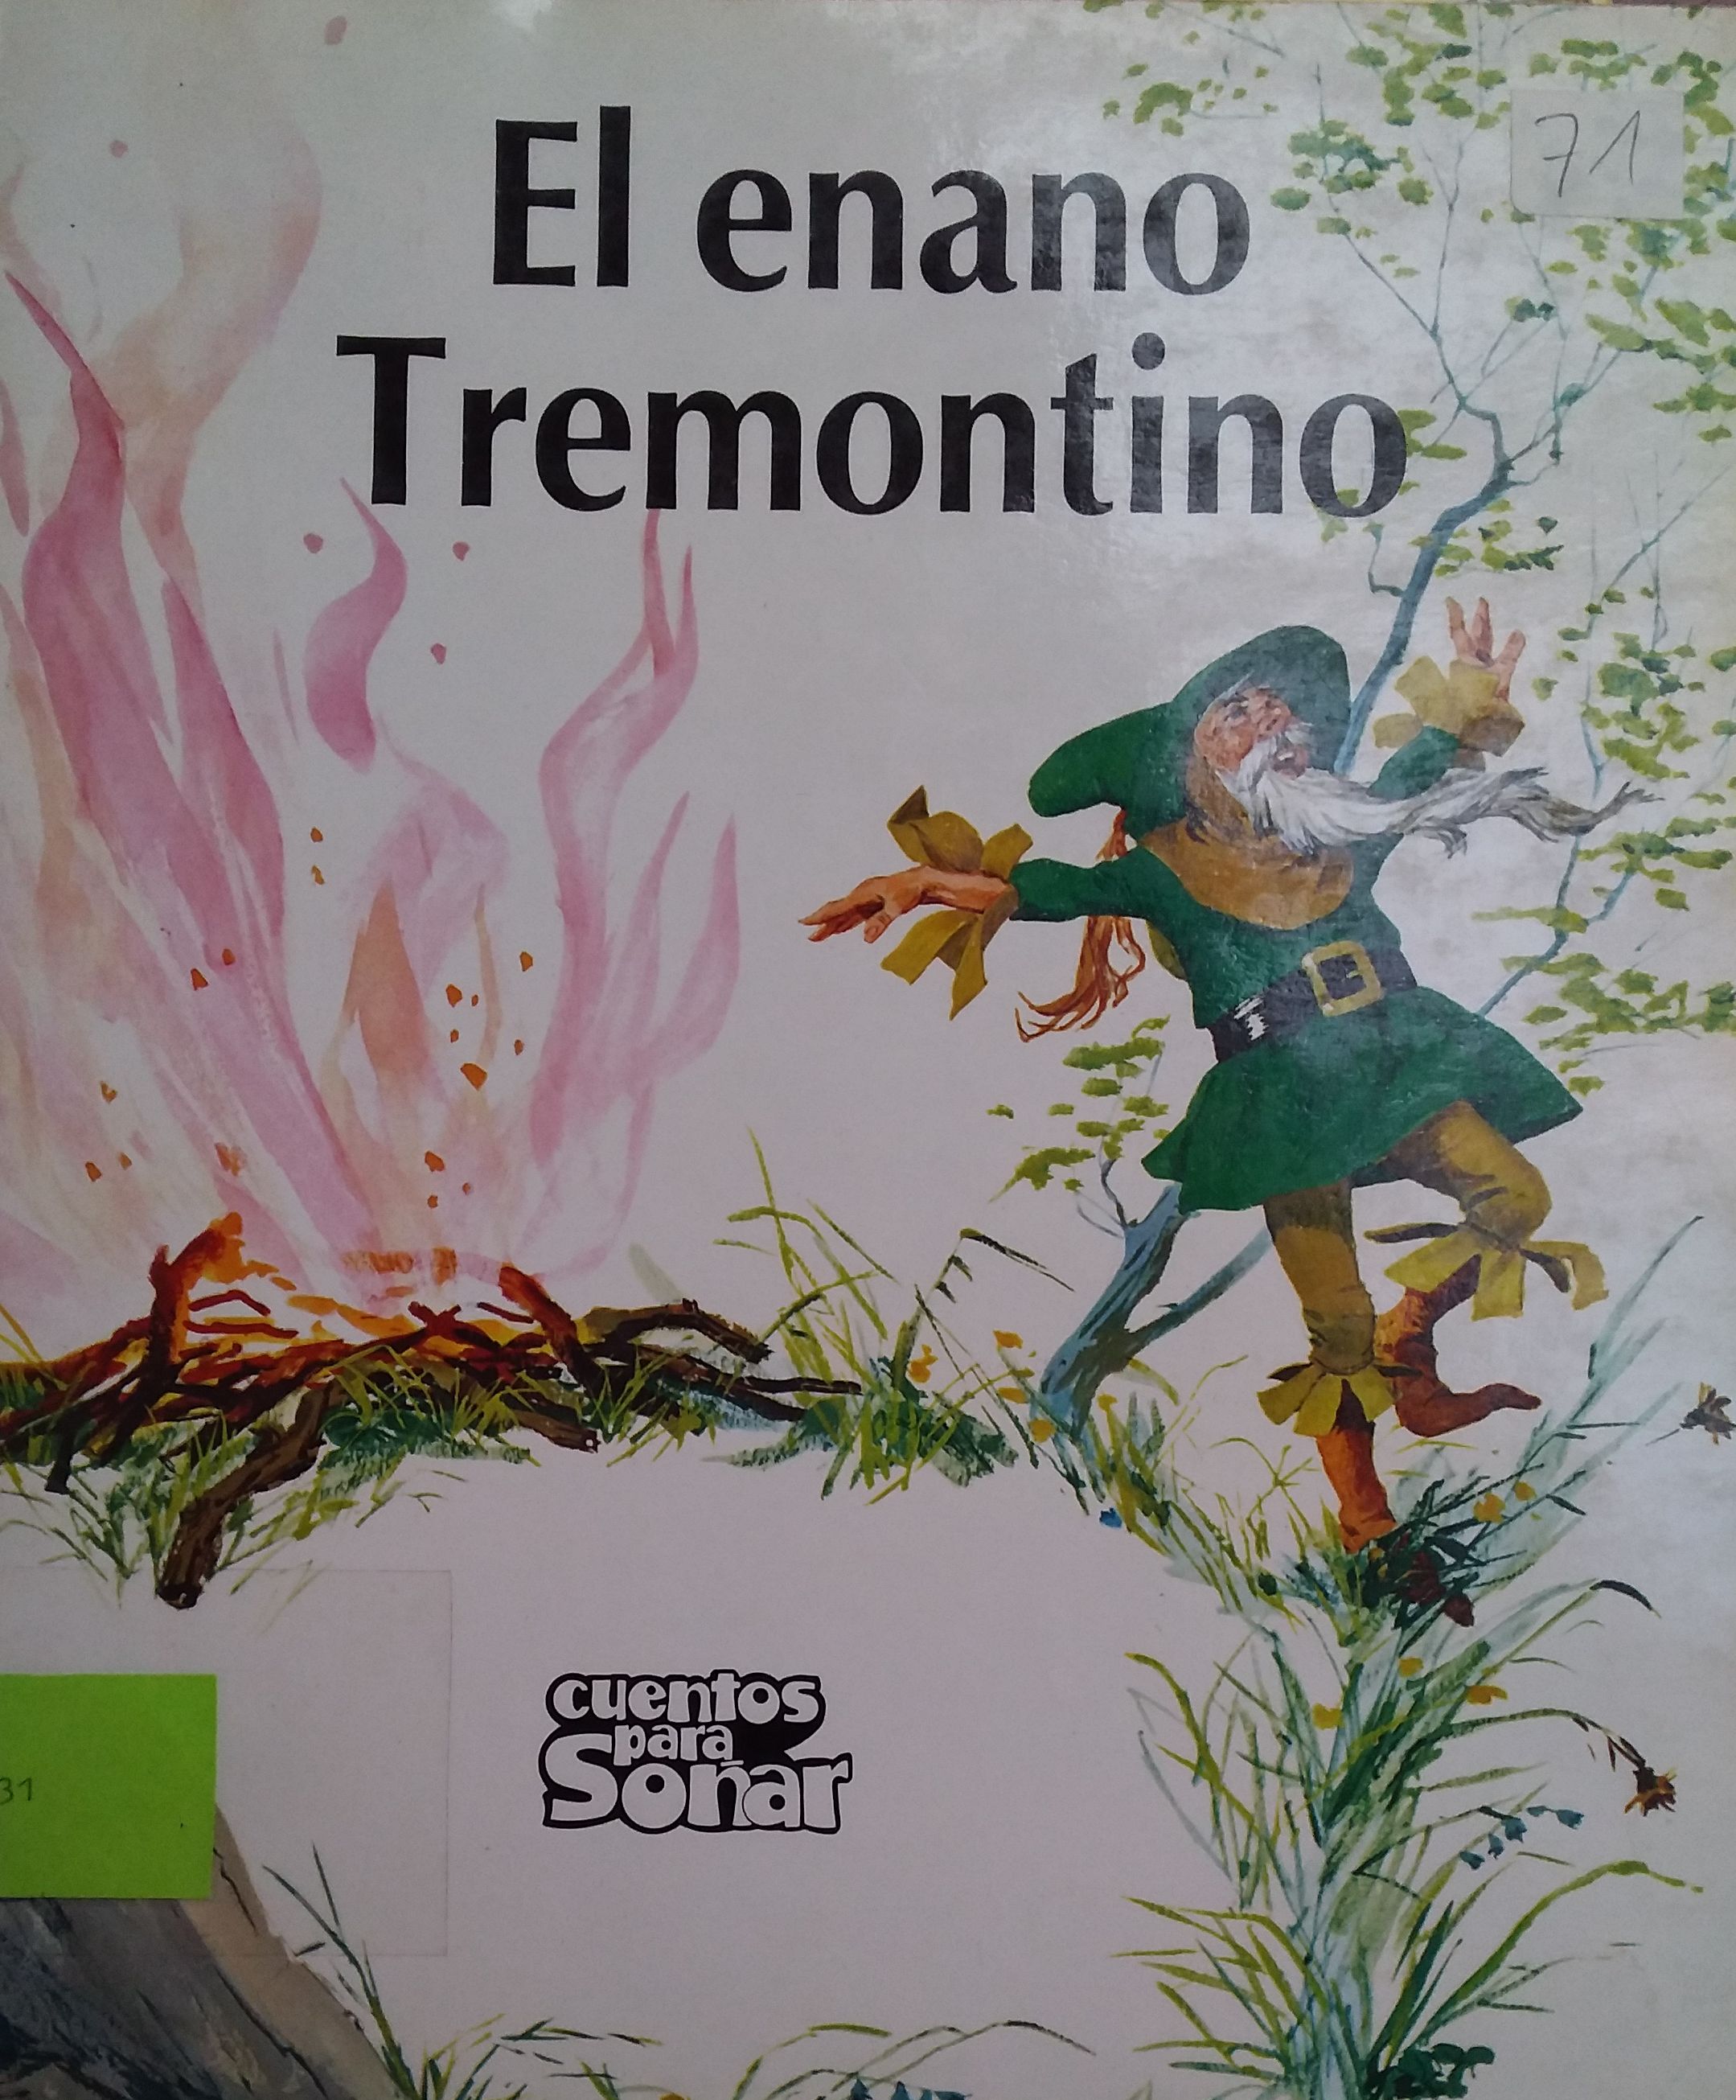 El Enano Tremontino